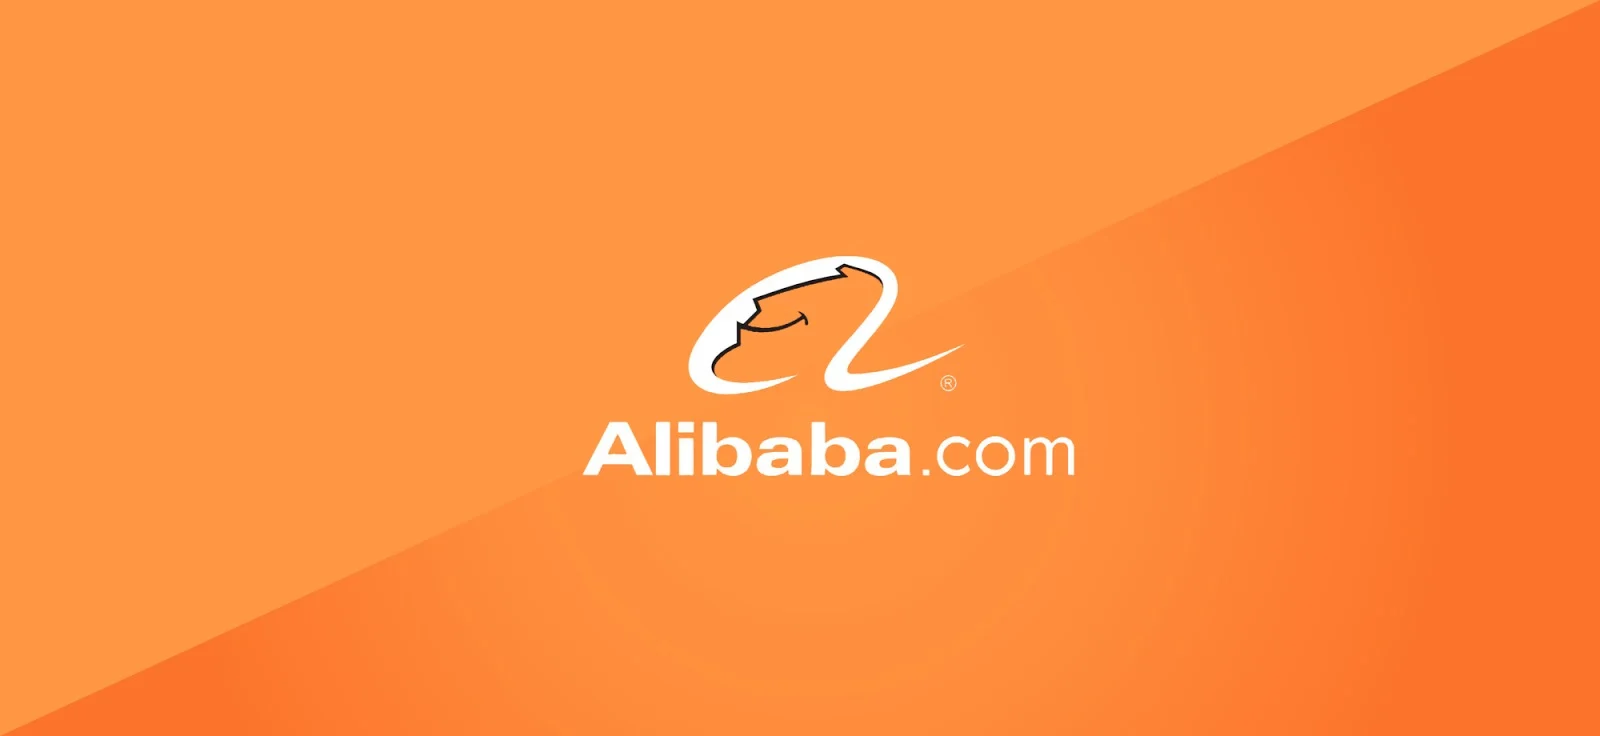 Alibaba: "Đế chế" thương mại điện tử khổng lồ từ Trung Quốc